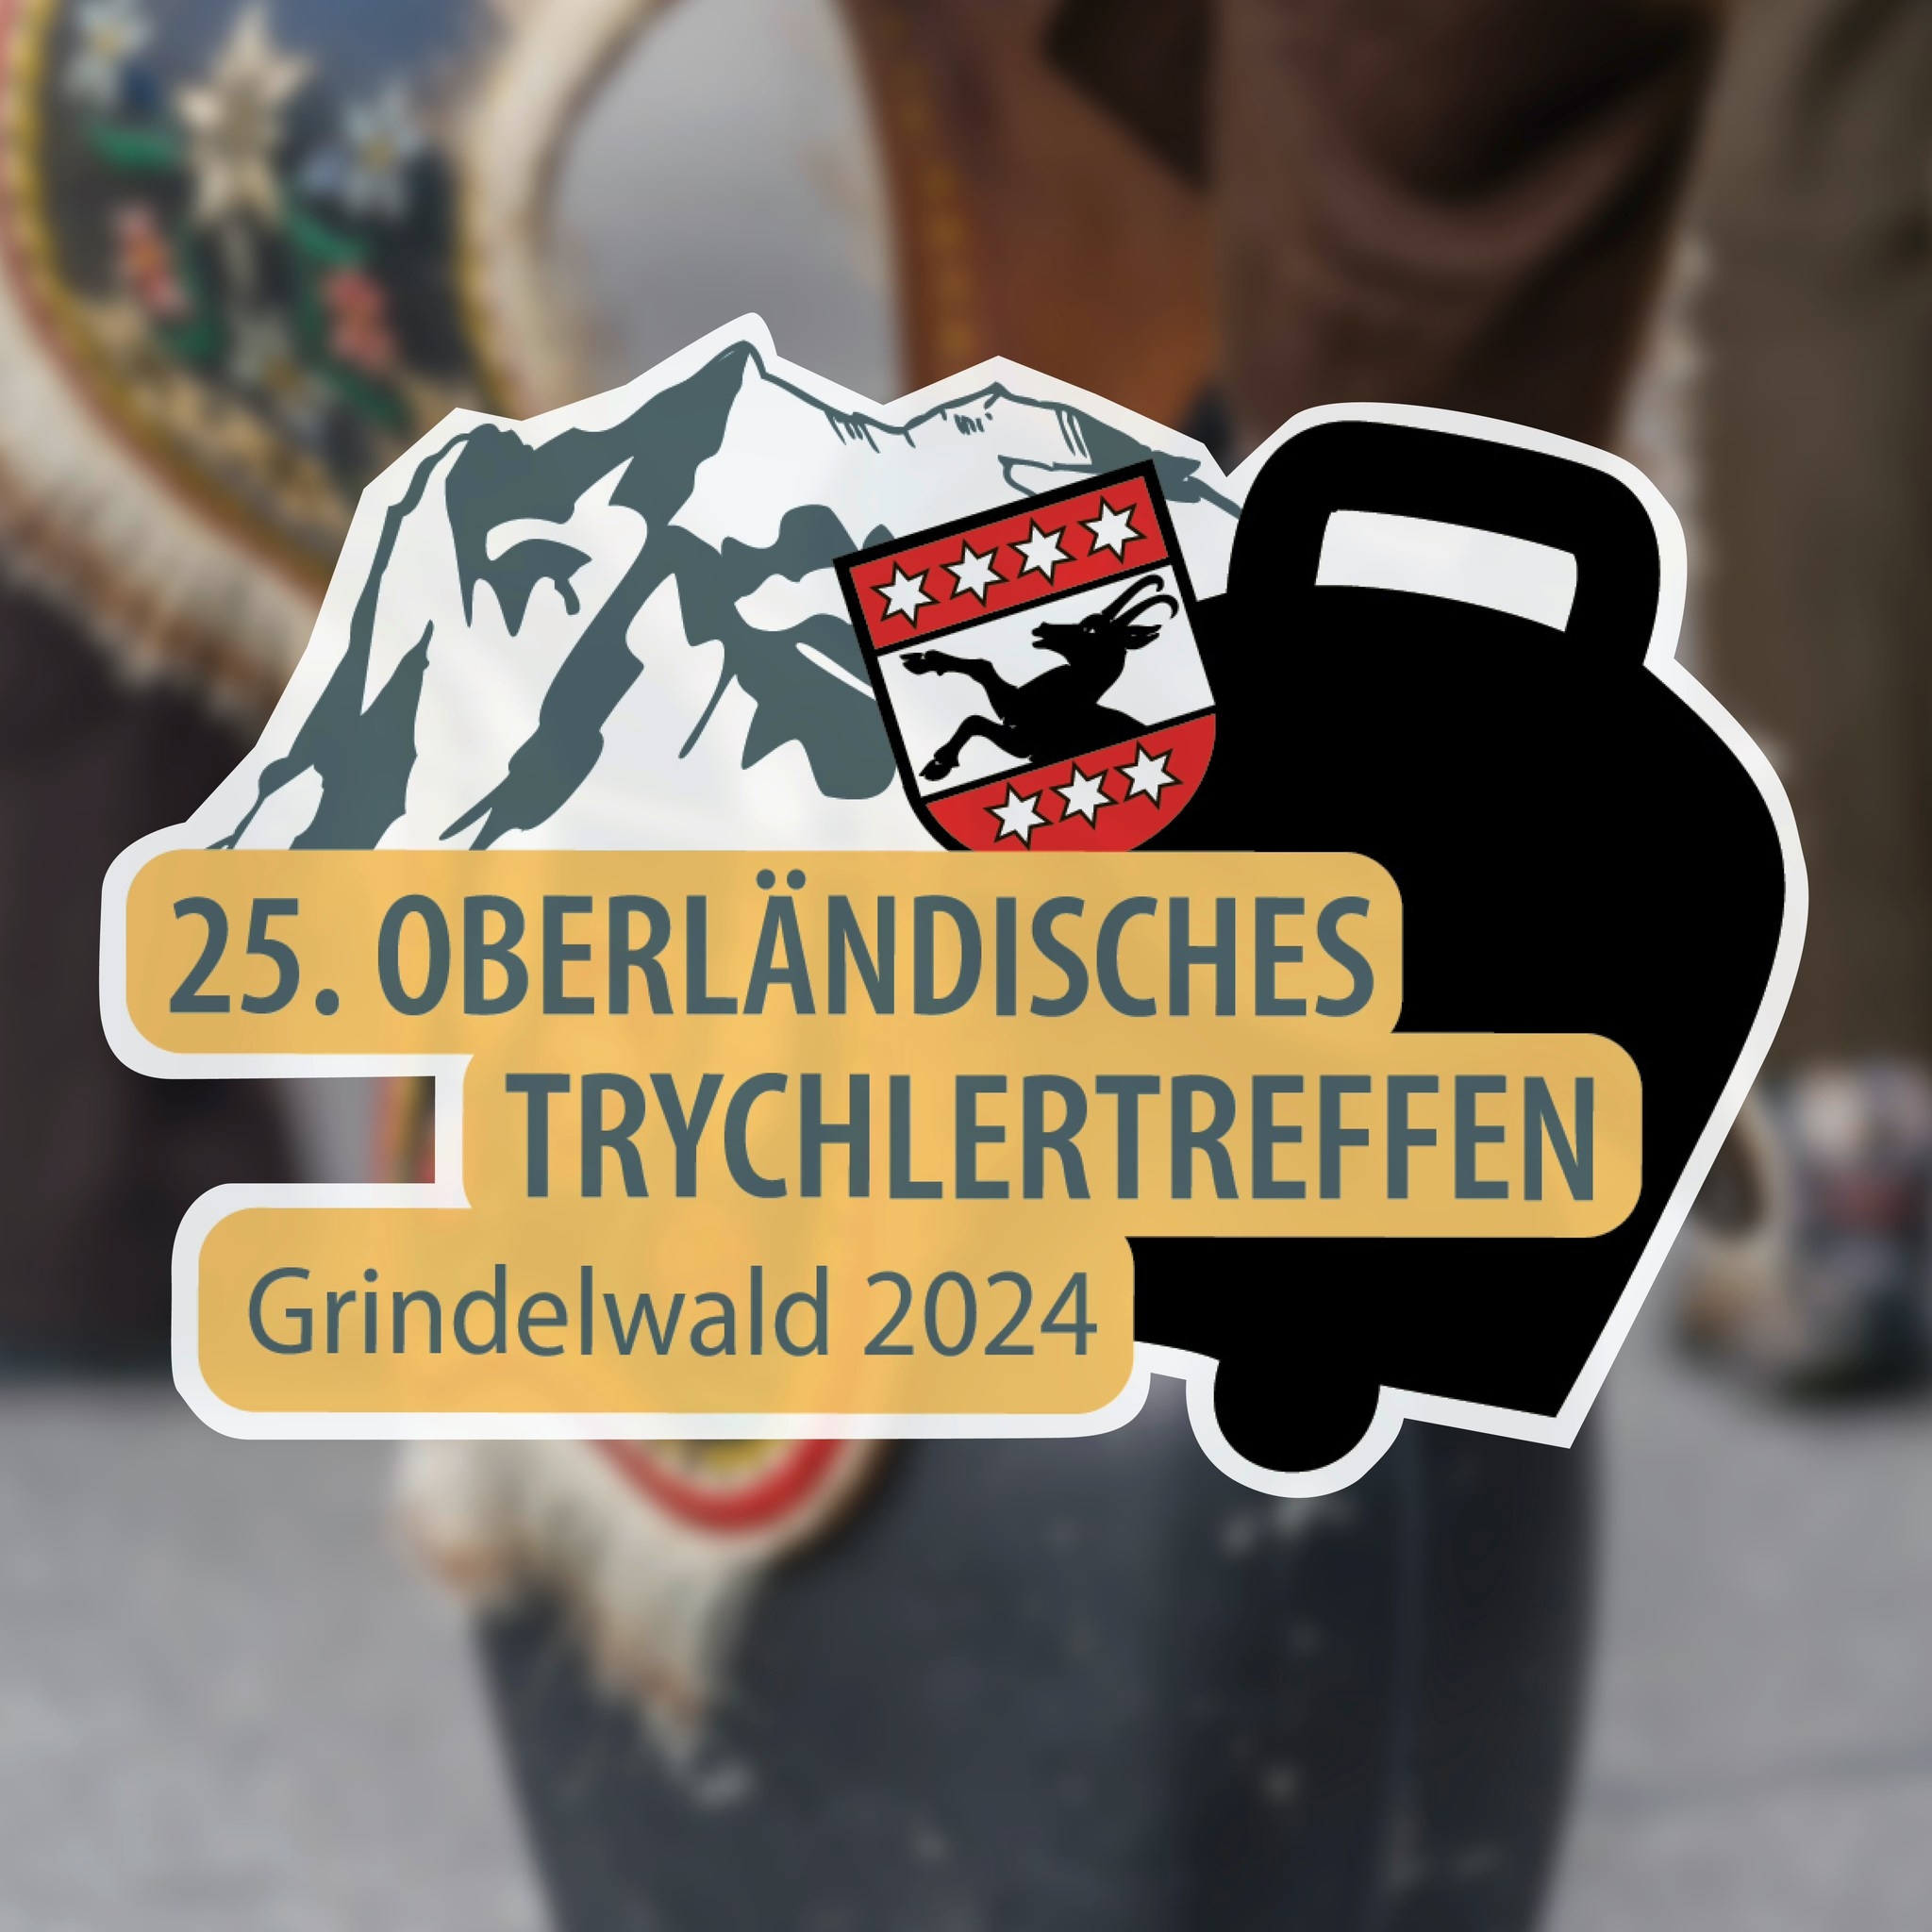 Oberländisches Trychertreffen in Grindelwald